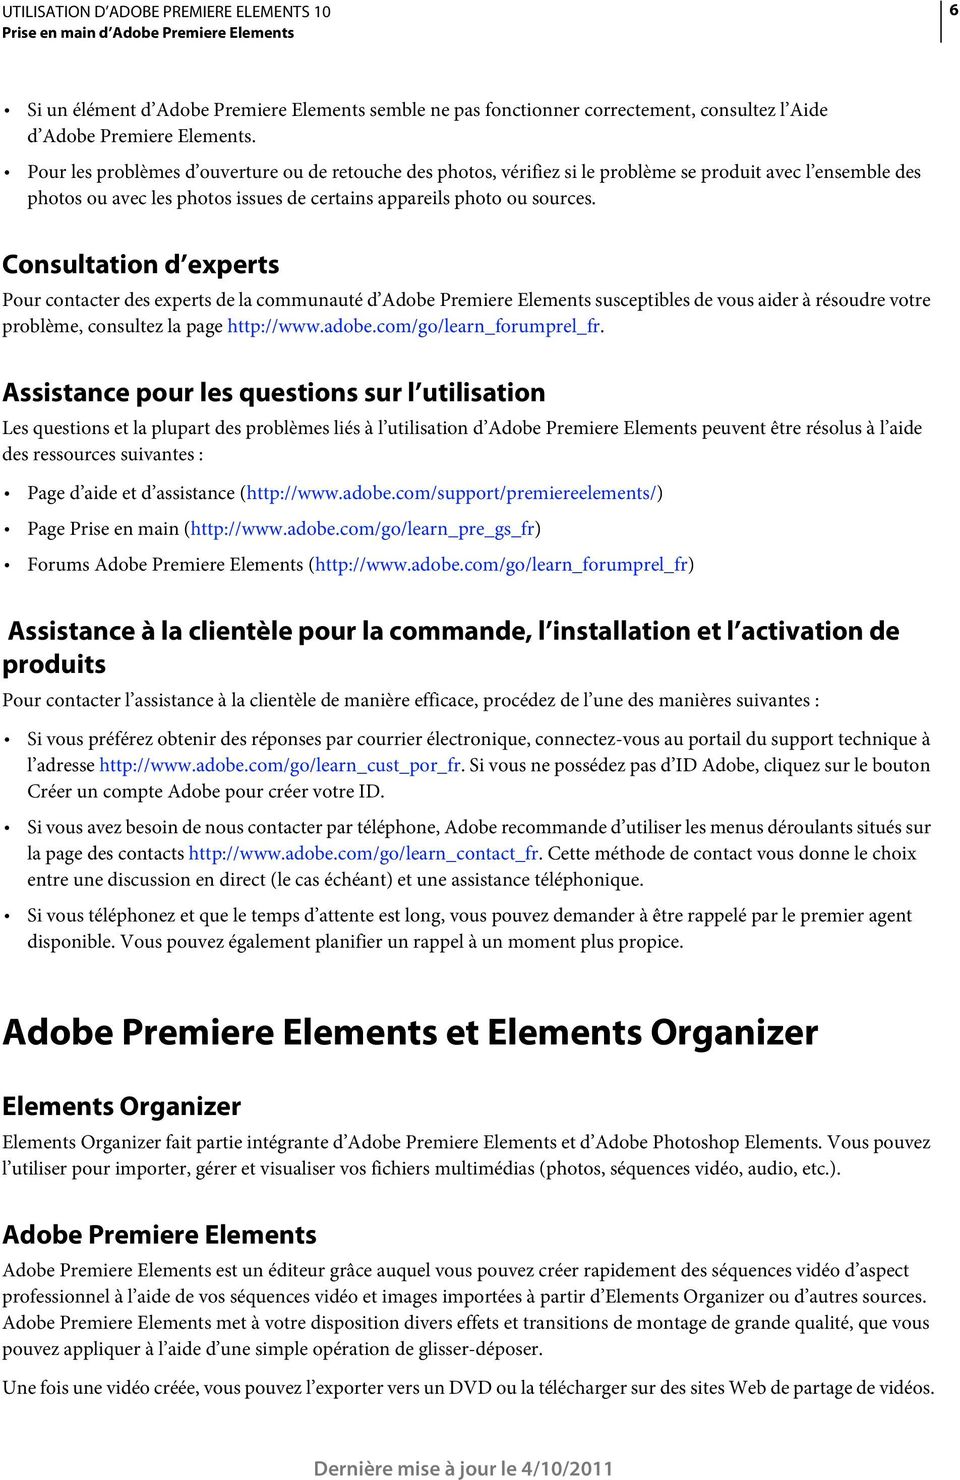 Consultation d experts Pour contacter des experts de la communauté d Adobe Premiere Elements susceptibles de vous aider à résoudre votre problème, consultez la page http://www.adobe.